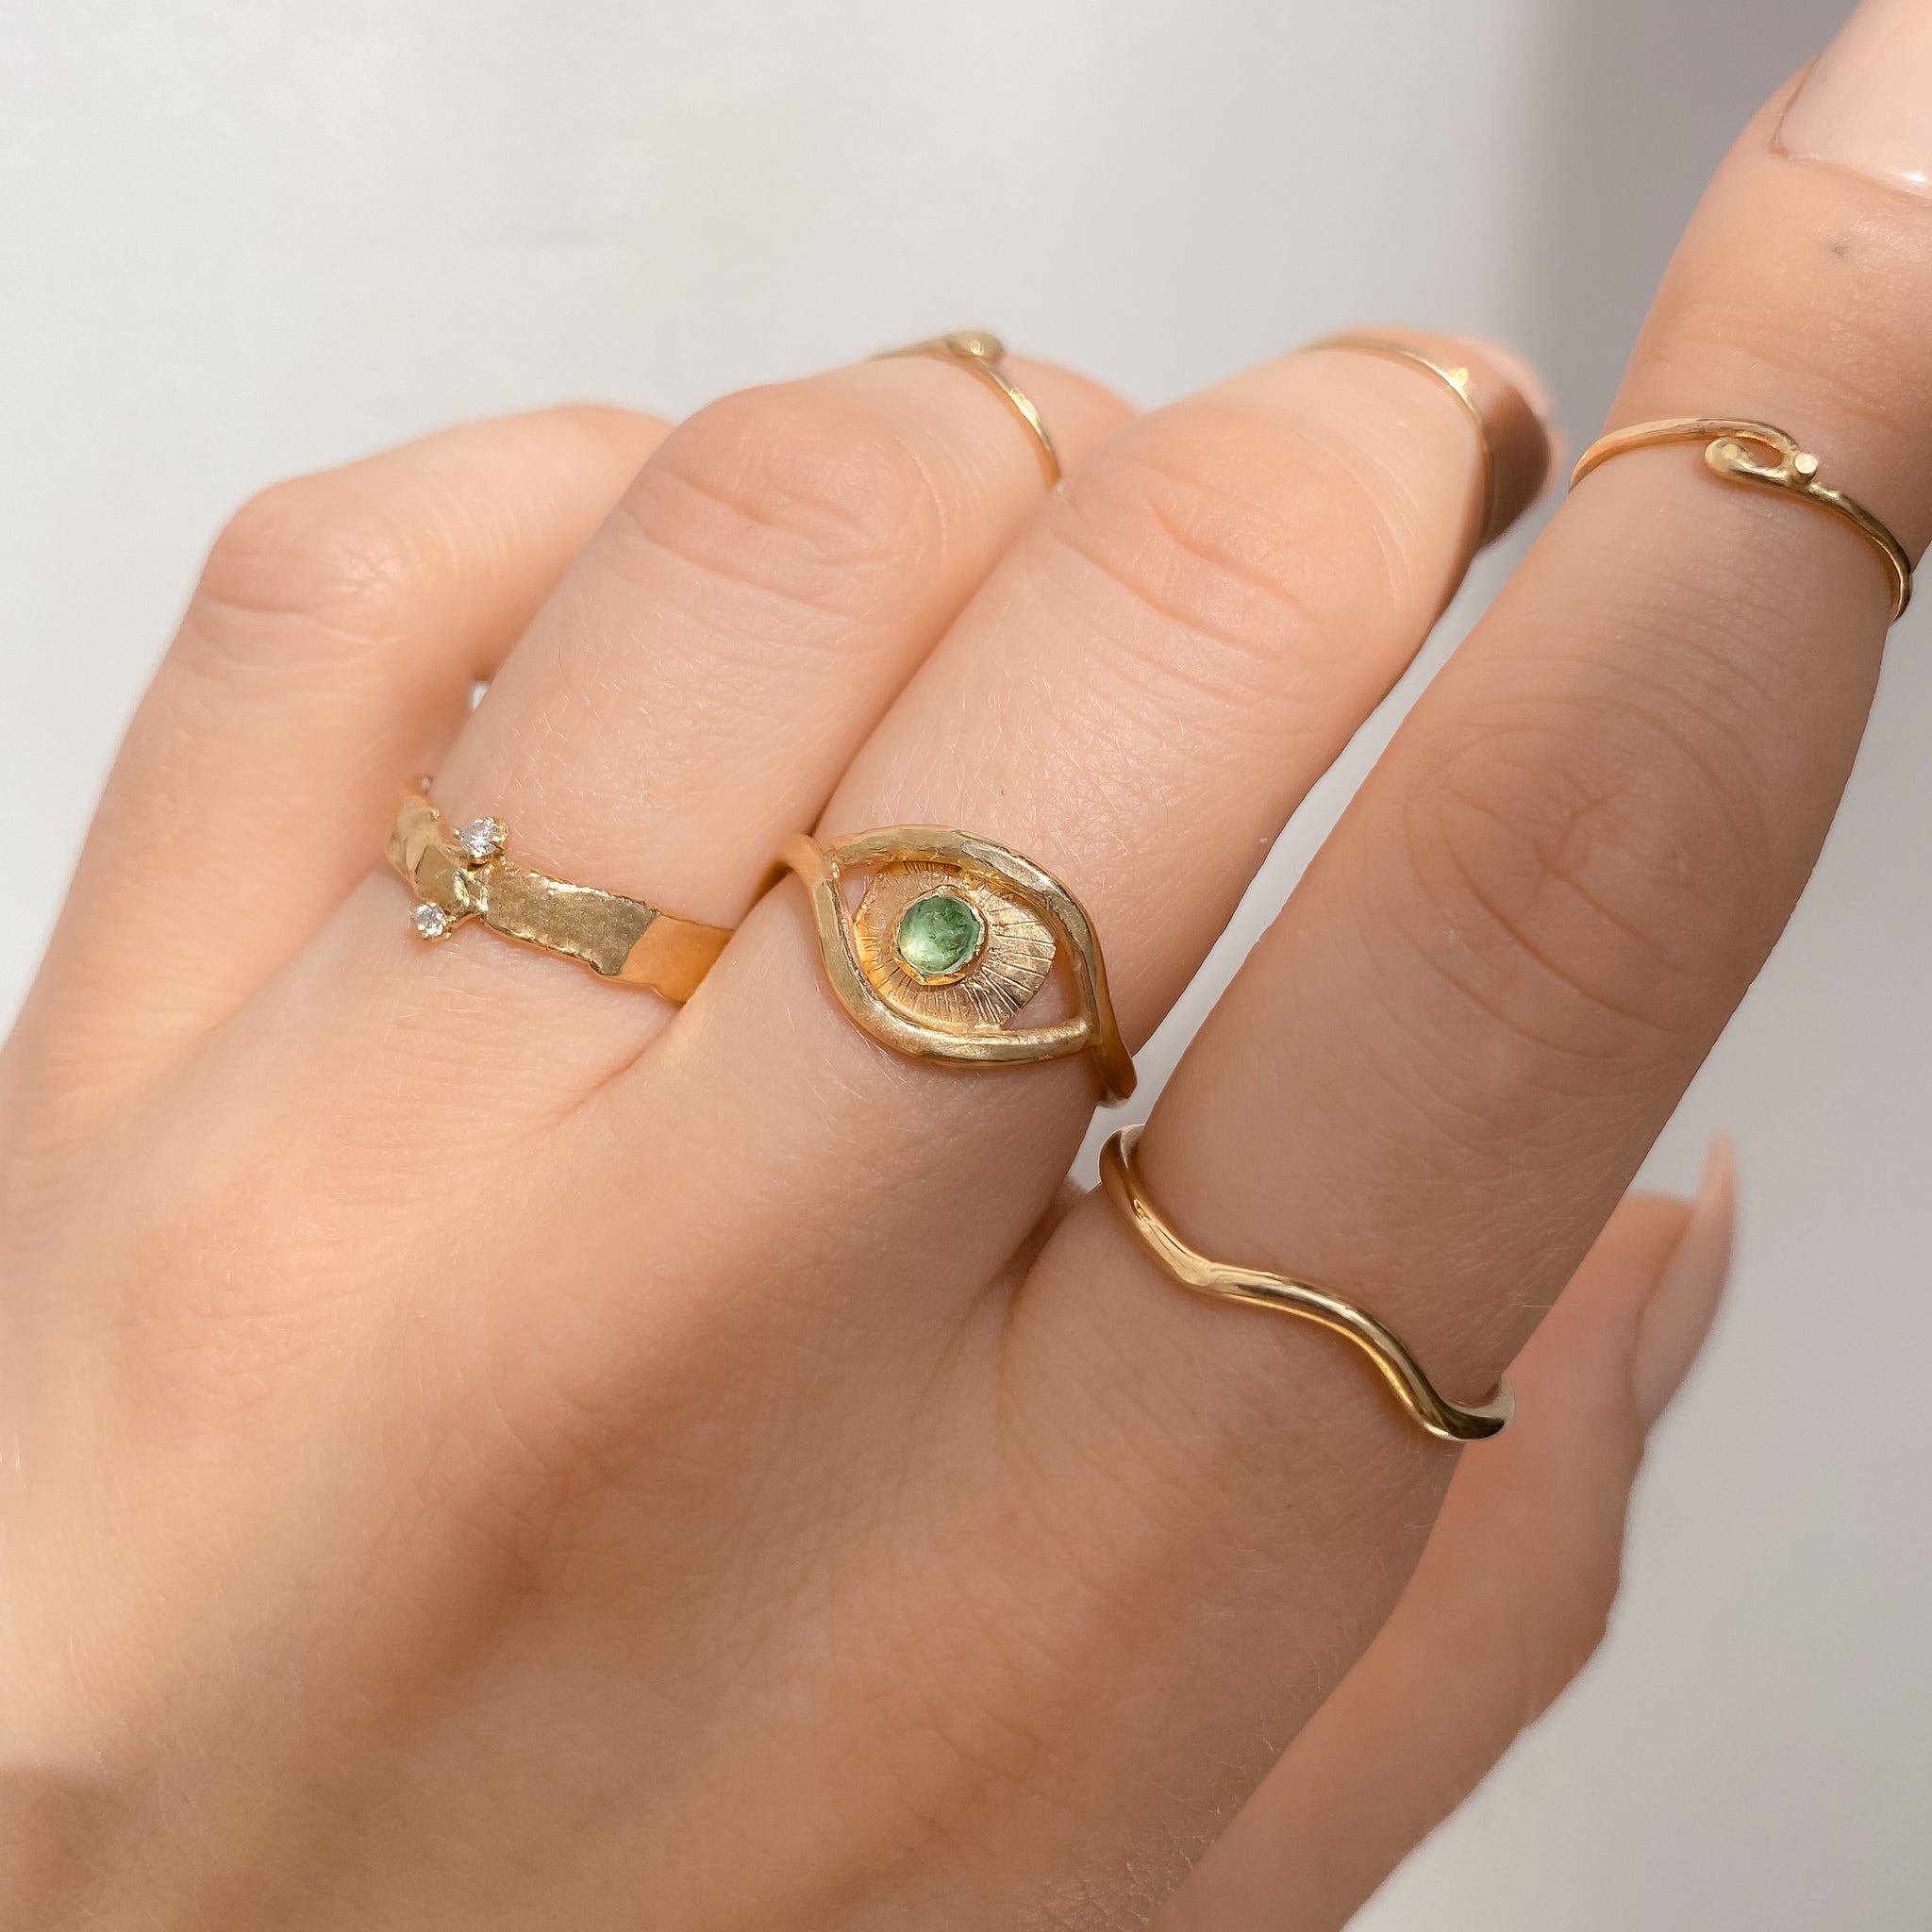 Cool Eye Ring - Eyeball Ring - Gold Ring - $10.00 - Lulus